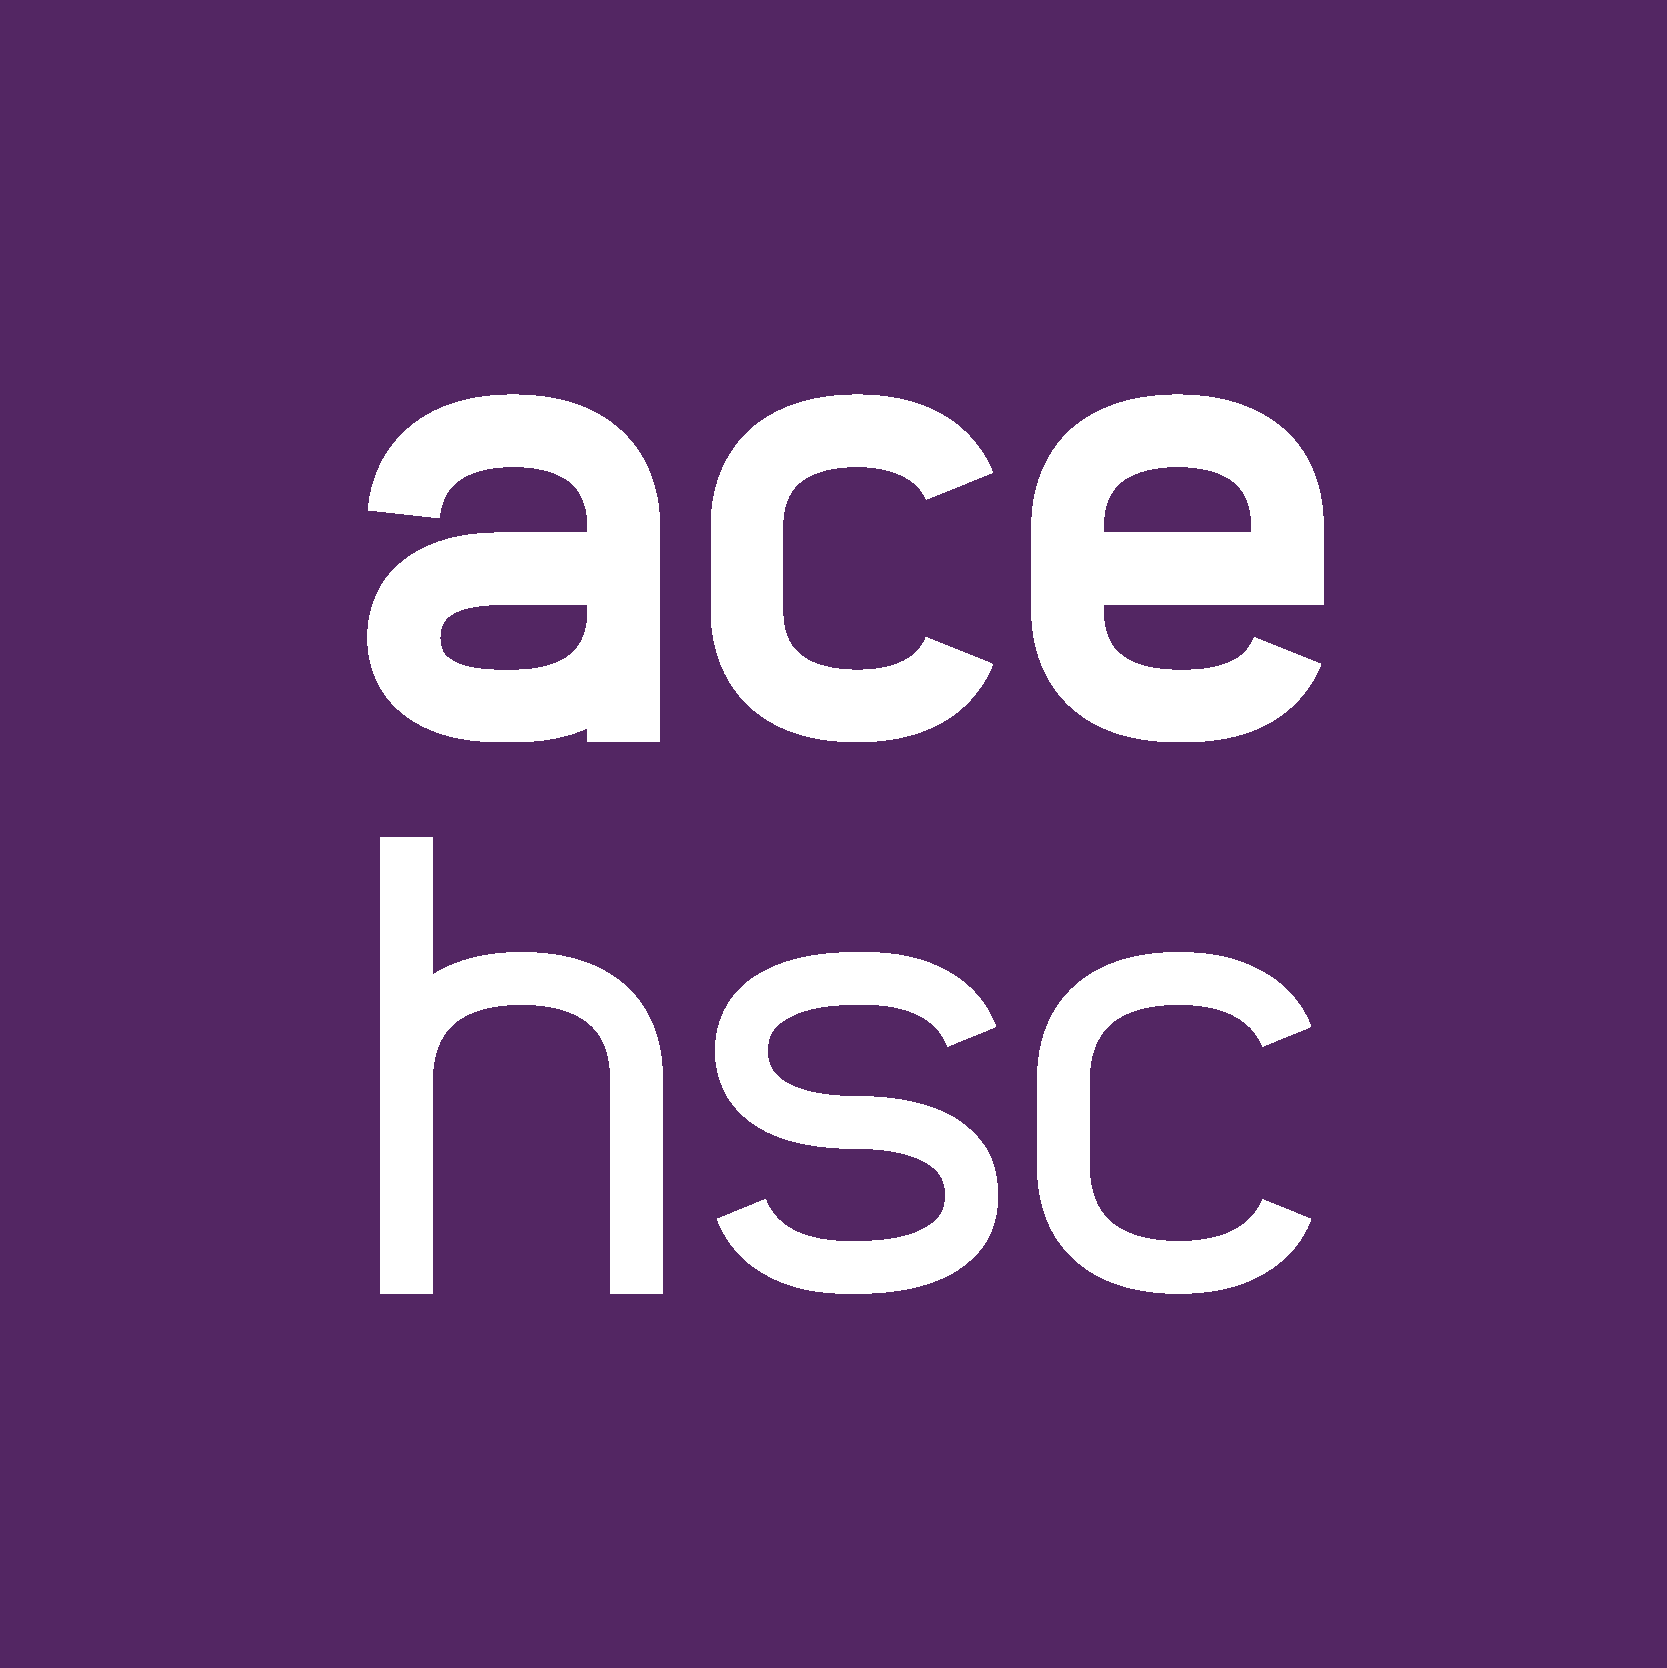 www.acehsc.net